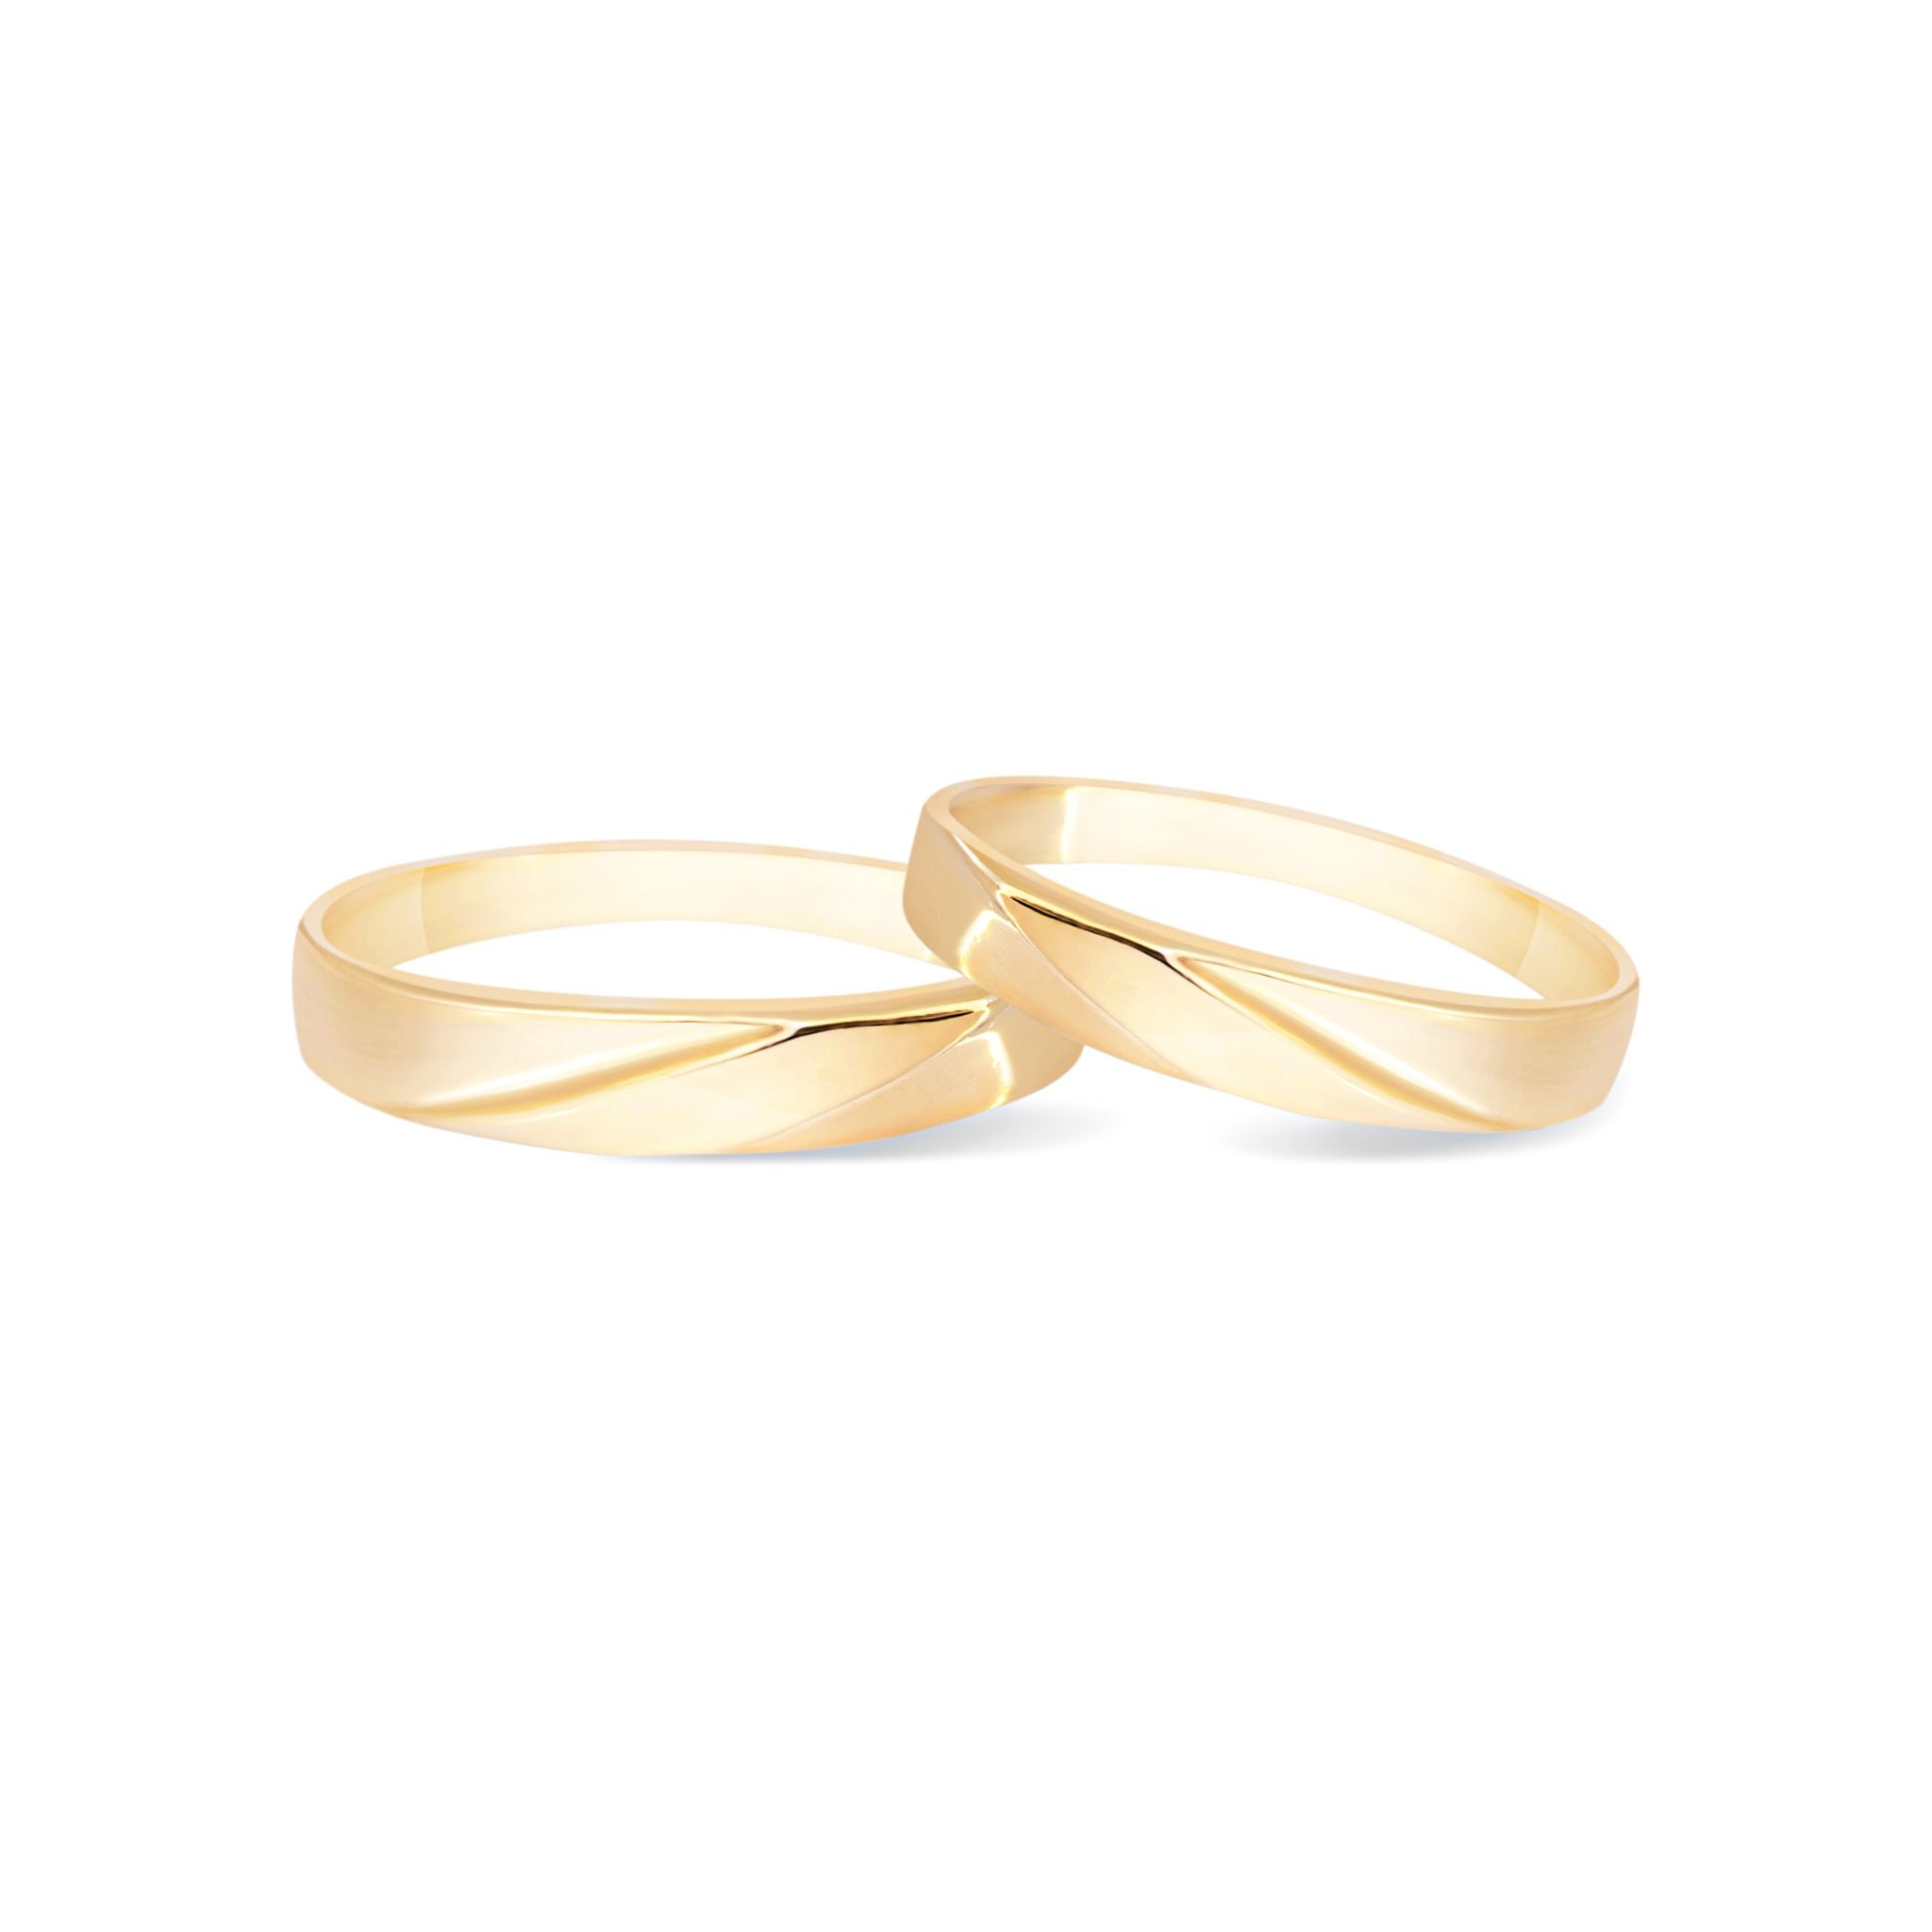 Cặp nhẫn cưới EM01